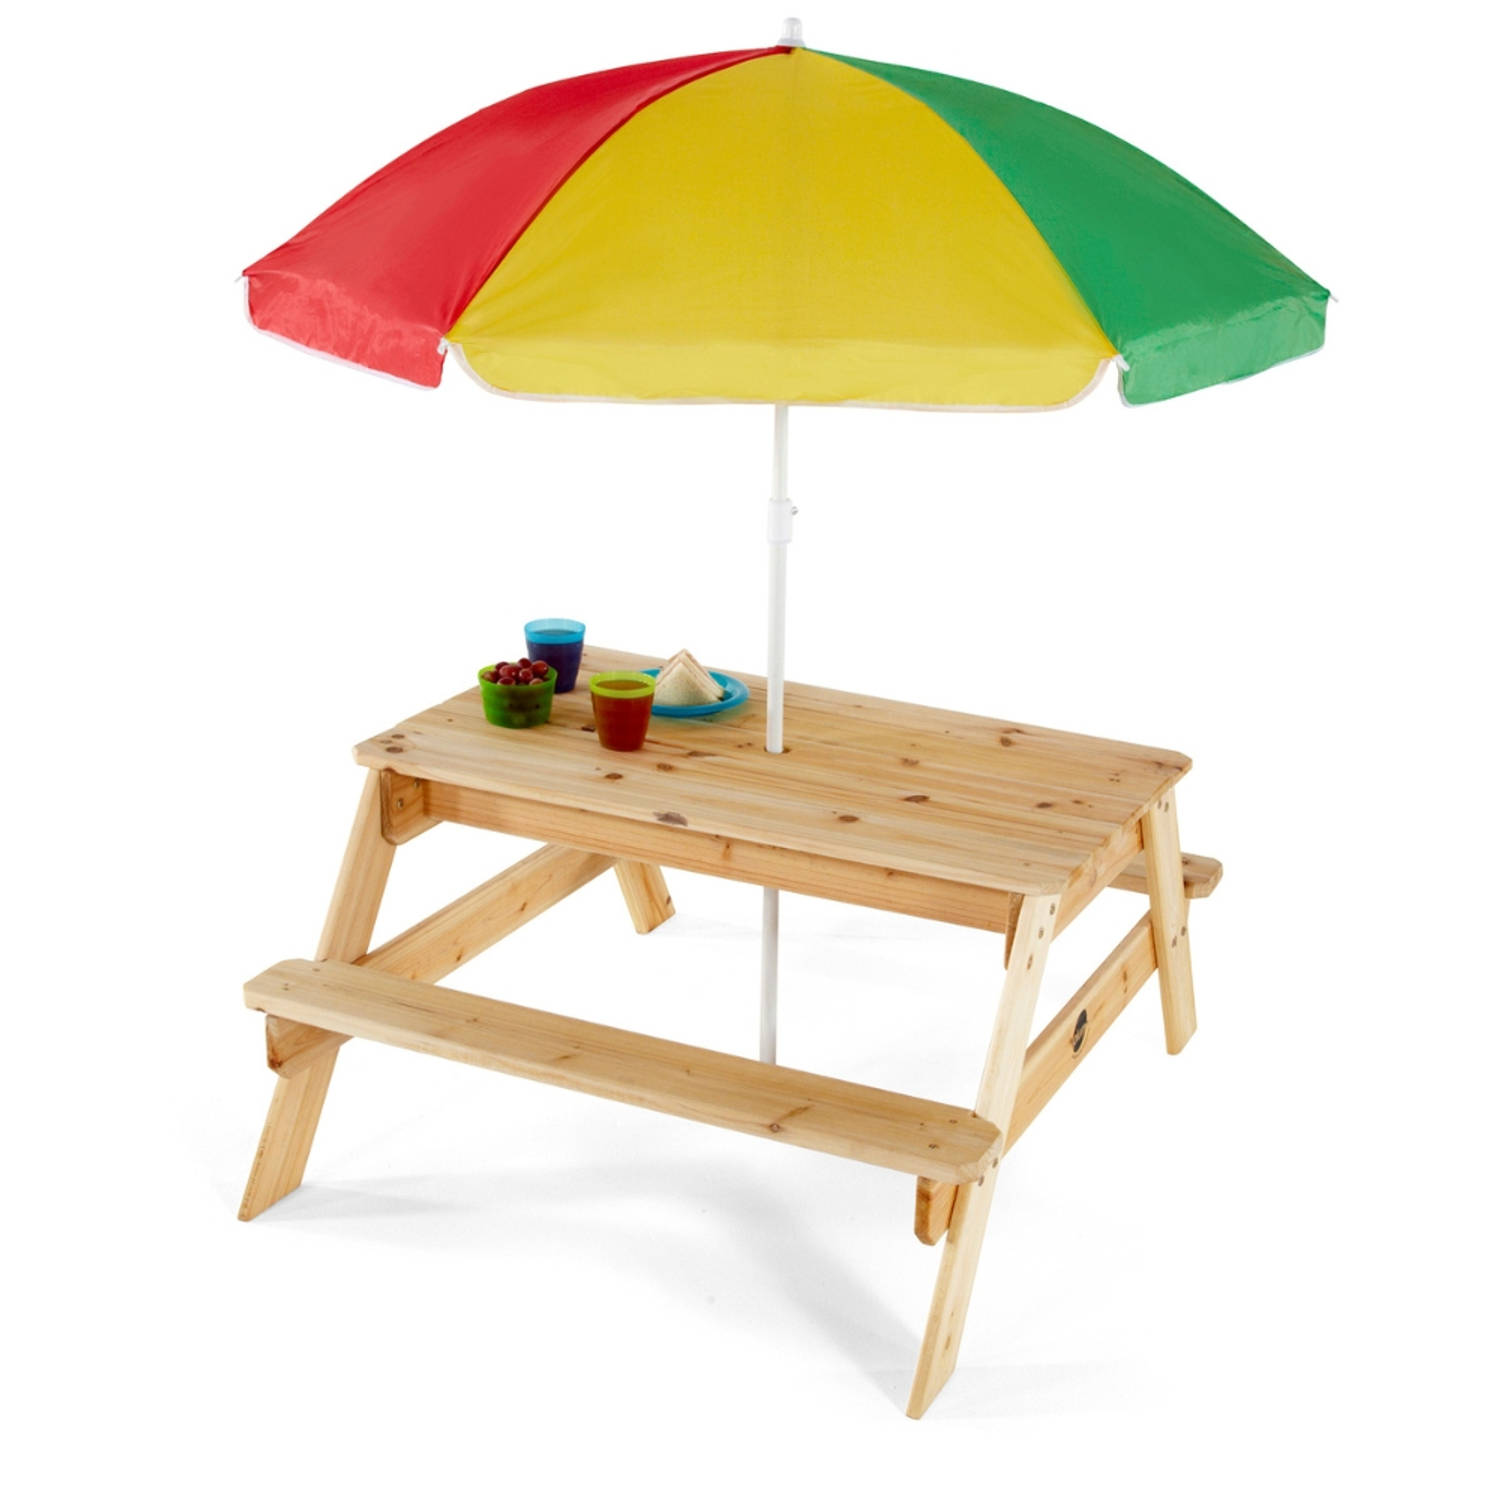 Plum Picknicktafel voor kinderen met parasol - Hout - Naturel